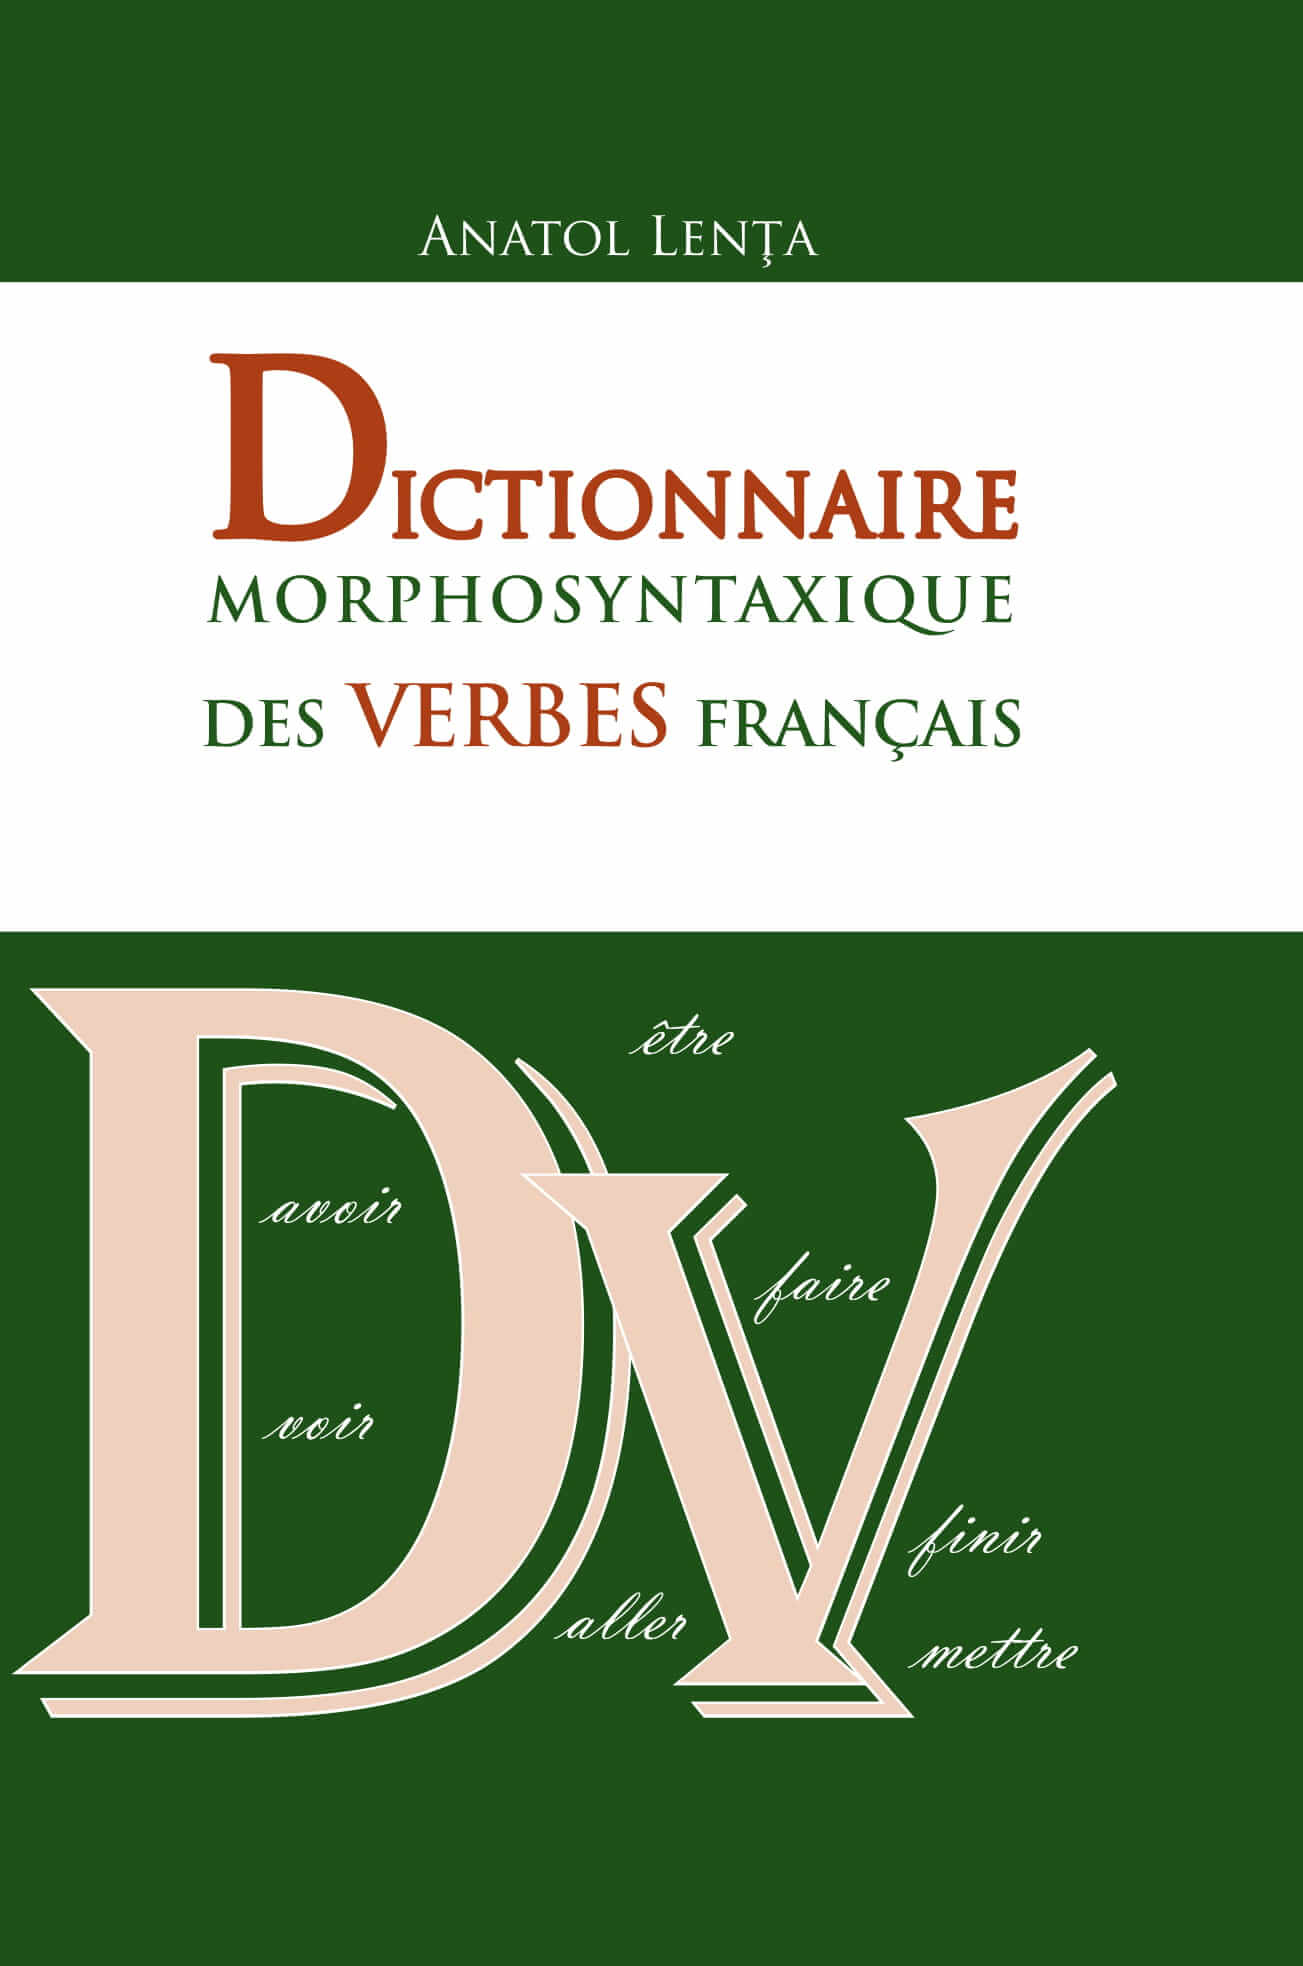 Dictionnaire morphosyntaxique des verbes francais | Anatol Lenta carturesti.ro Carte